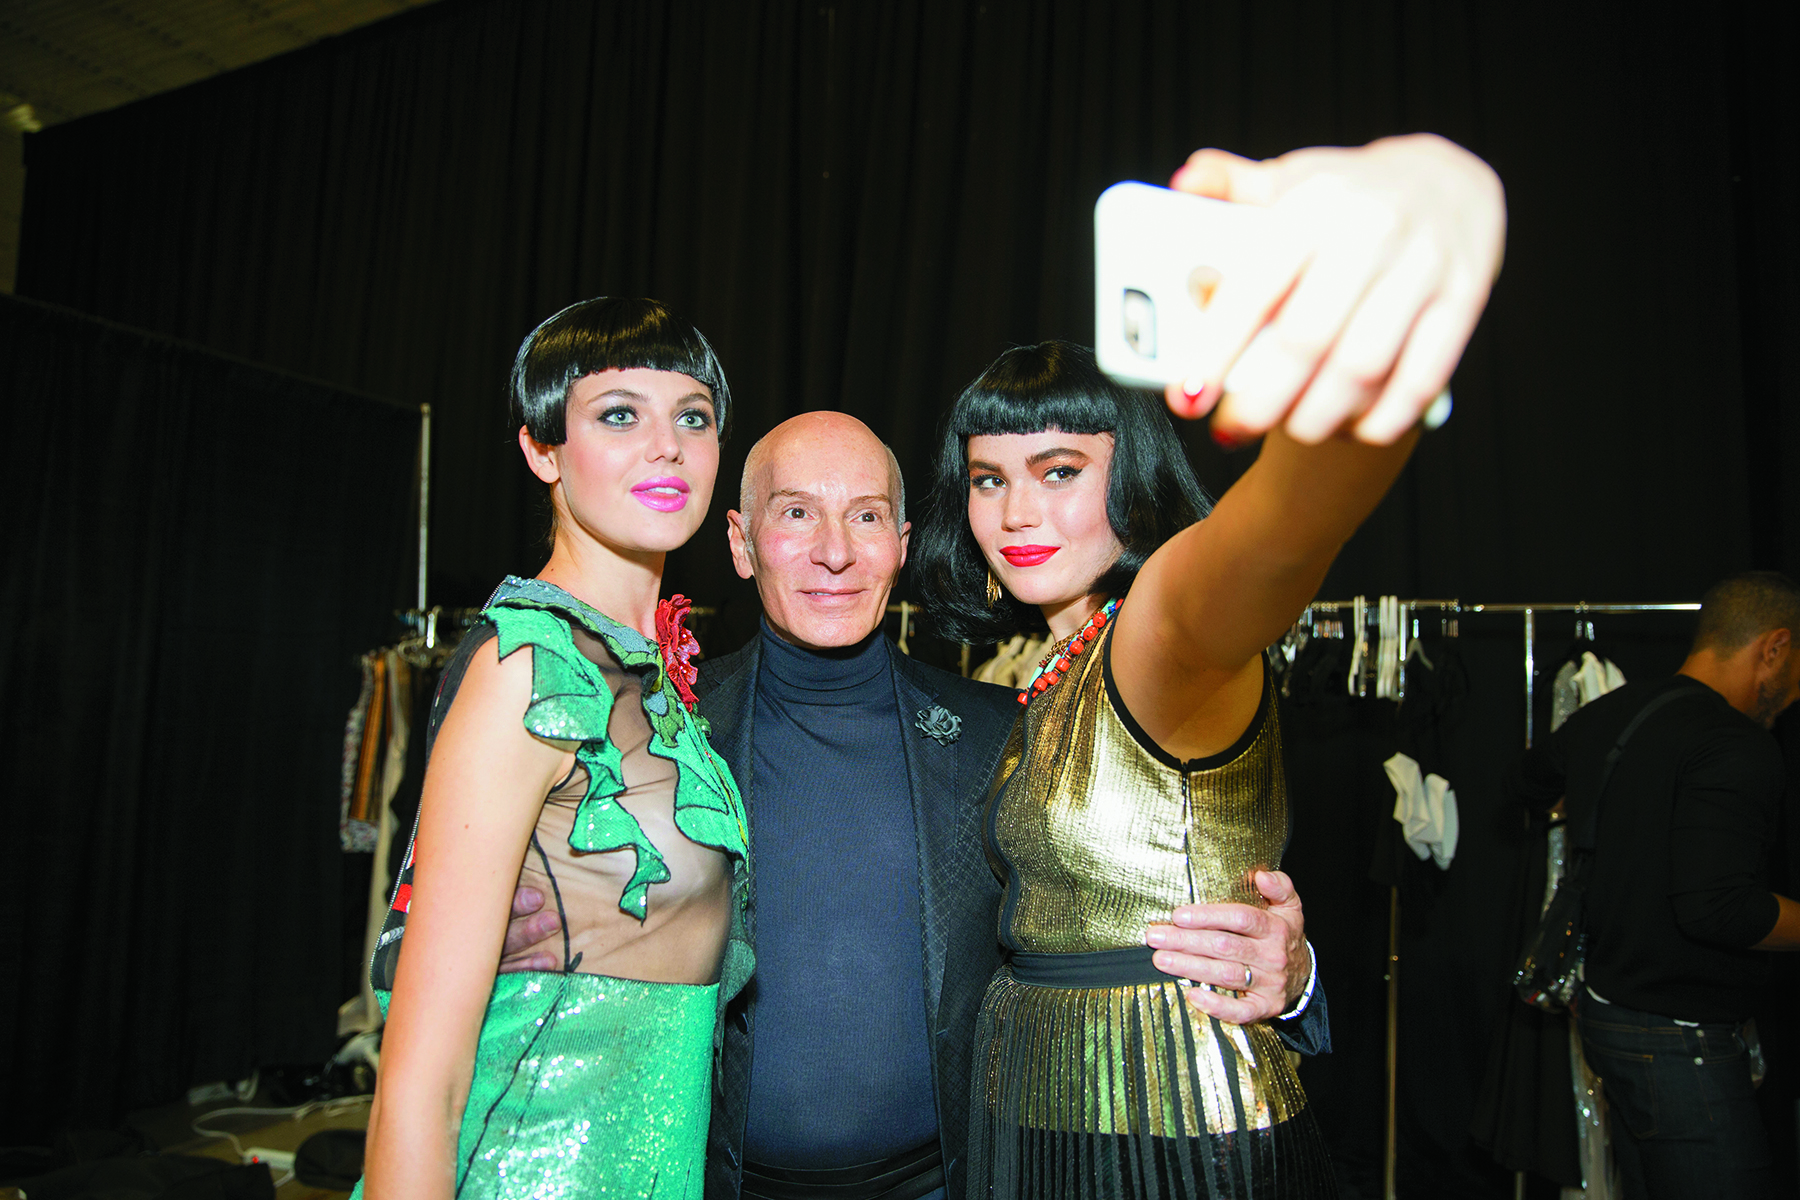 Models taking a selfie with Garren backstage